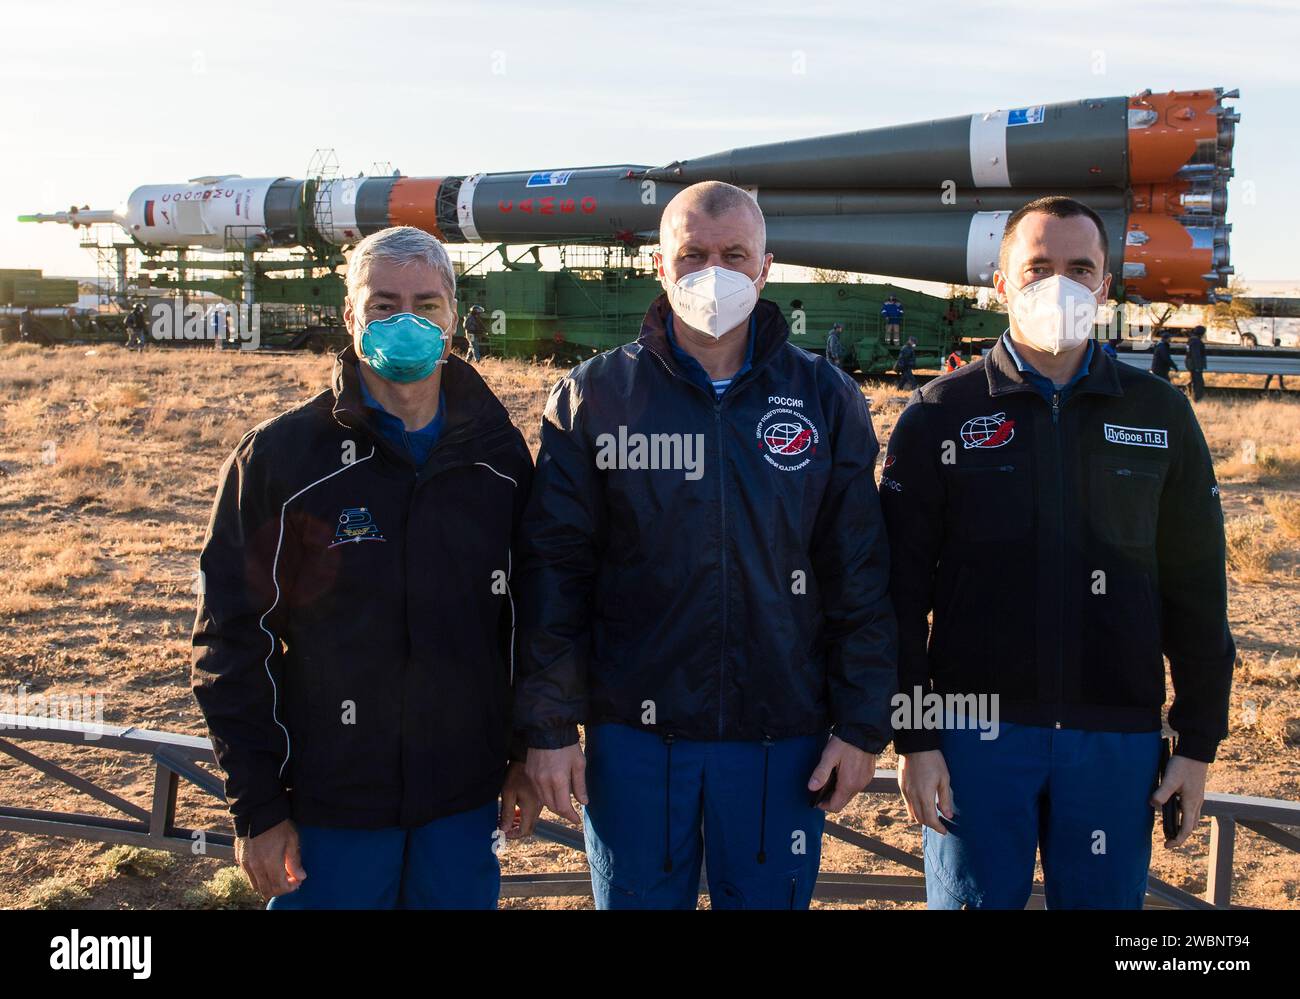 Expedition 64 Besatzungsmitglieder NASA-Astronaut Mark Vande Hei, links, und russische Kosmonauten Oleg Nowitskiy, Zentrum, und Petr Dubrov, rechts, von Roscosmos, posieren Sie für ein Foto, während die Sojus-Rakete mit dem Zug zum Startplatz auf der Site 31 am Sonntag, 11. Oktober 2020, im Baikonur-Kosmodrom in Kasachstan ausgerollt wird. Expedition 64 die russischen Kosmonauten Sergej Ryzhikow und Sergej Kud-Swerchkow aus Roscosmos sowie die NASA-Astronautin Kate Rubins sollen am 14. Oktober an Bord ihres Raumschiffs Sojus MS-17 starten, um eine sechsmonatige Mission an Bord der Internationalen Raumstation zu starten. Stockfoto